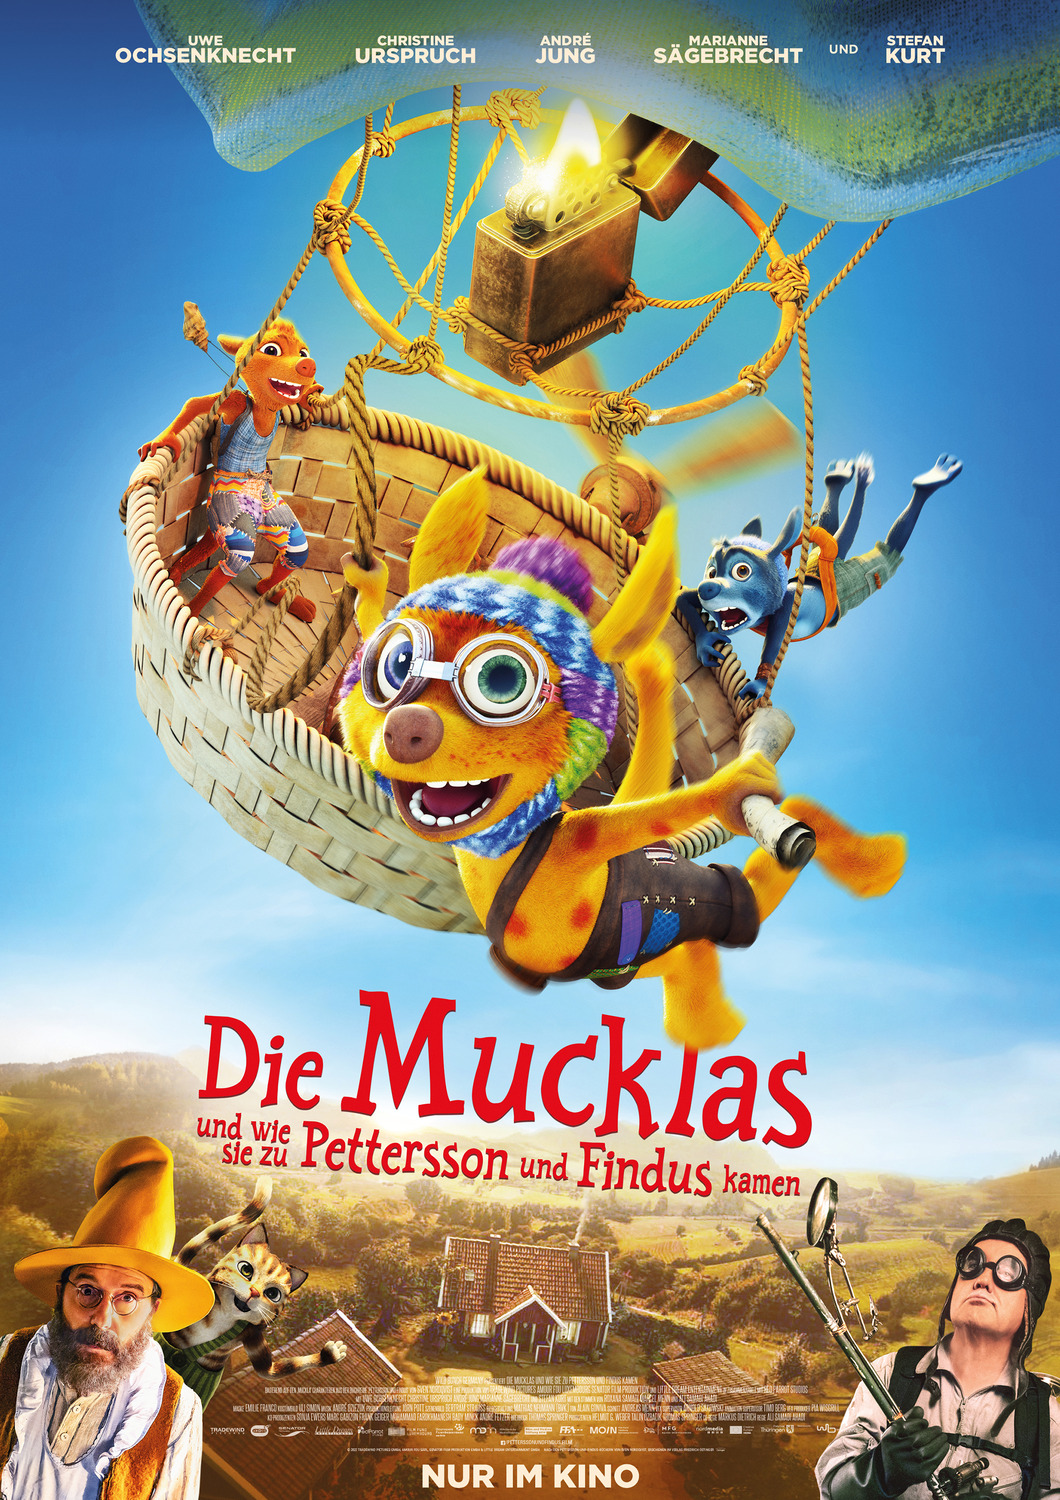 Extra Large Movie Poster Image for Die Mucklas ... und wie sie zu Pettersson und Findus kamen 